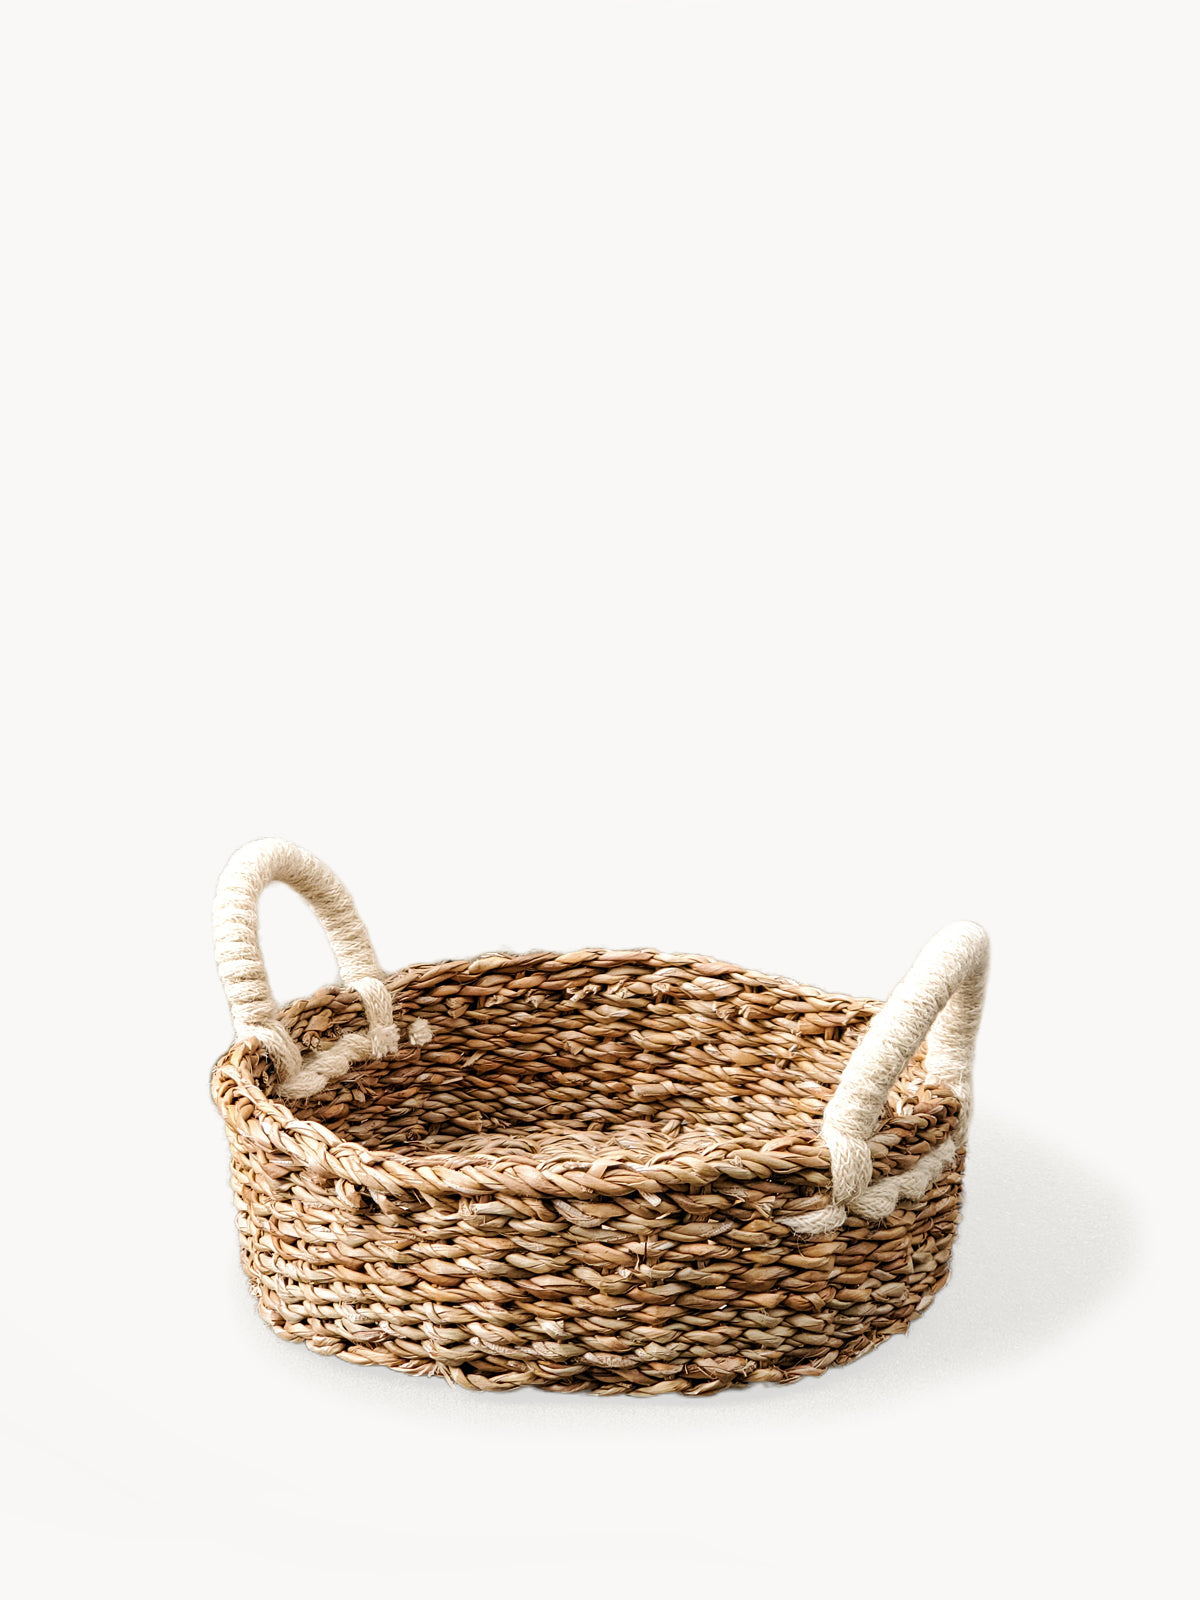 
                  
                    Savar Round Bread Basket by KORISSA
                  
                